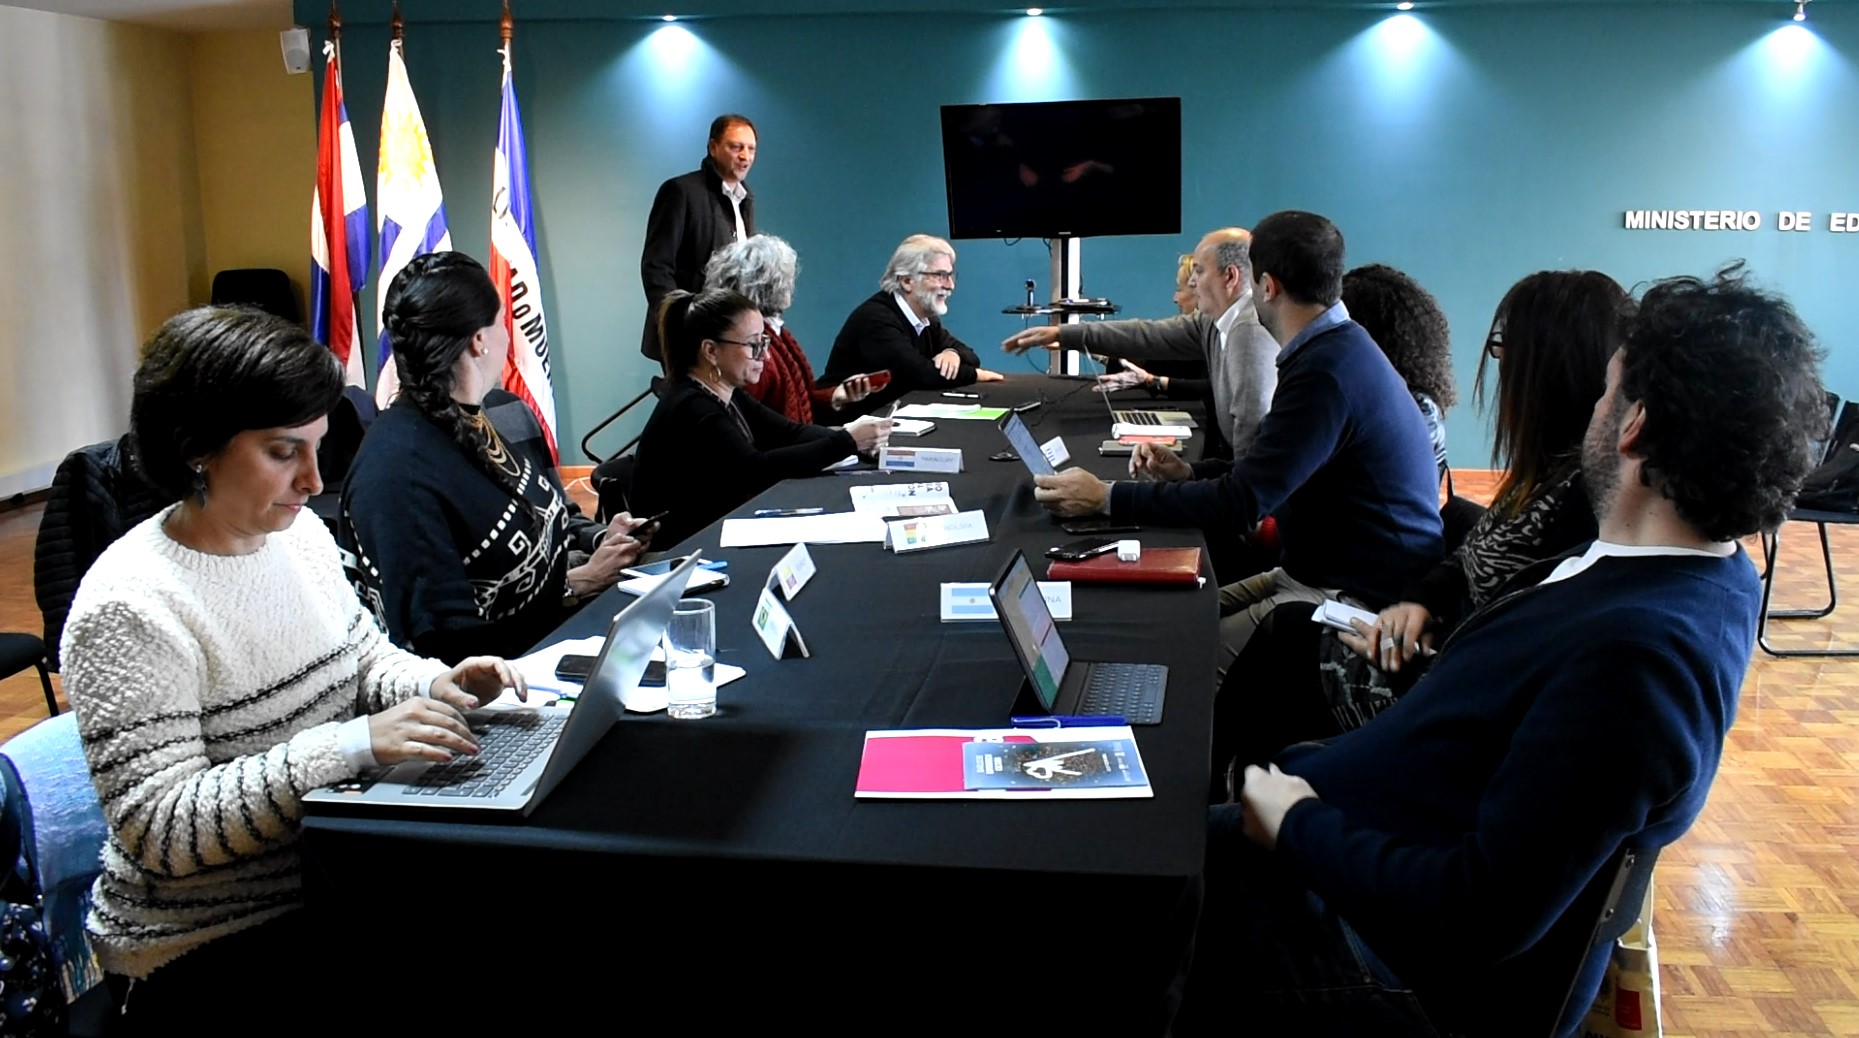 La reunión de expertos del MICSUR tuvo lugar el pasado 6 de setiembre en el MEC, en Ciudad Vieja. Foto: Carlos Loría / LARED21